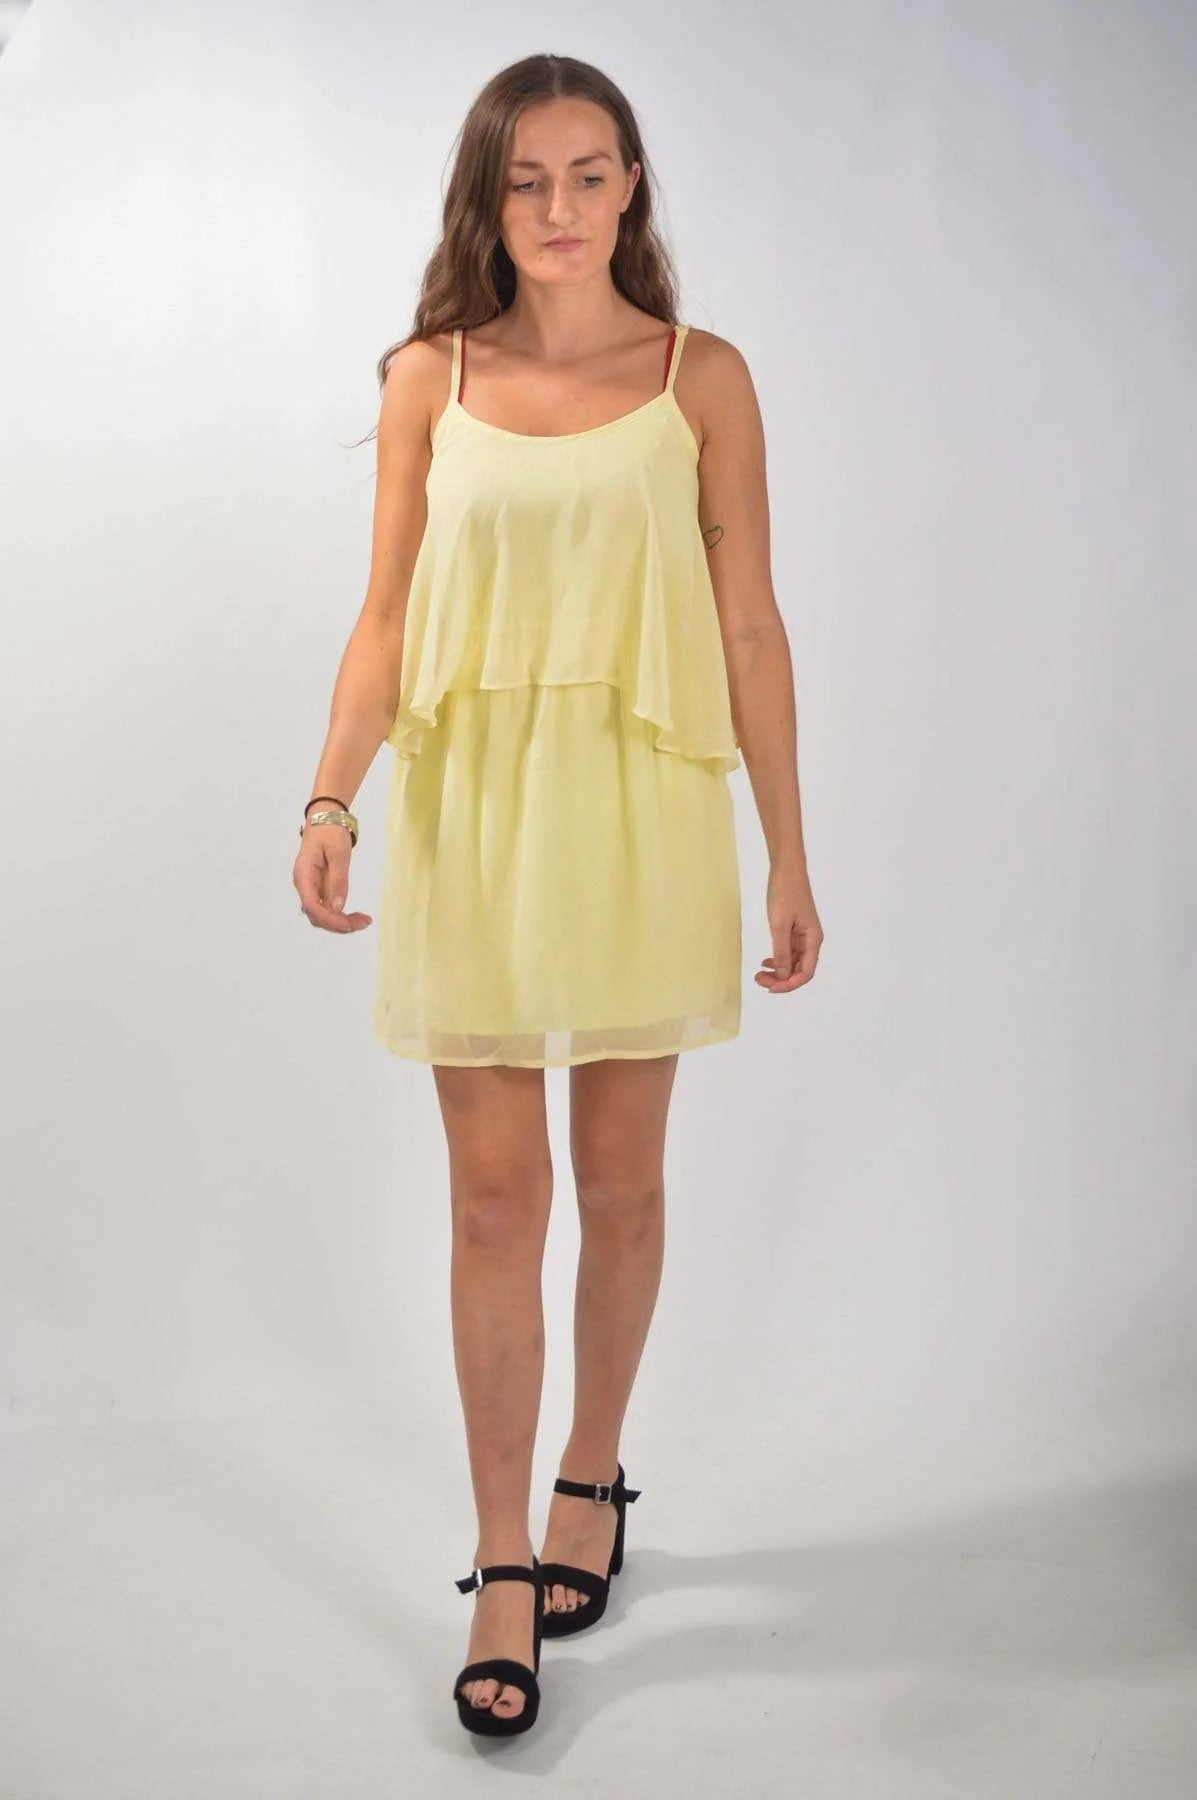 ASOS Chiffon Layered Strappy Dress Pale Yellow / 8